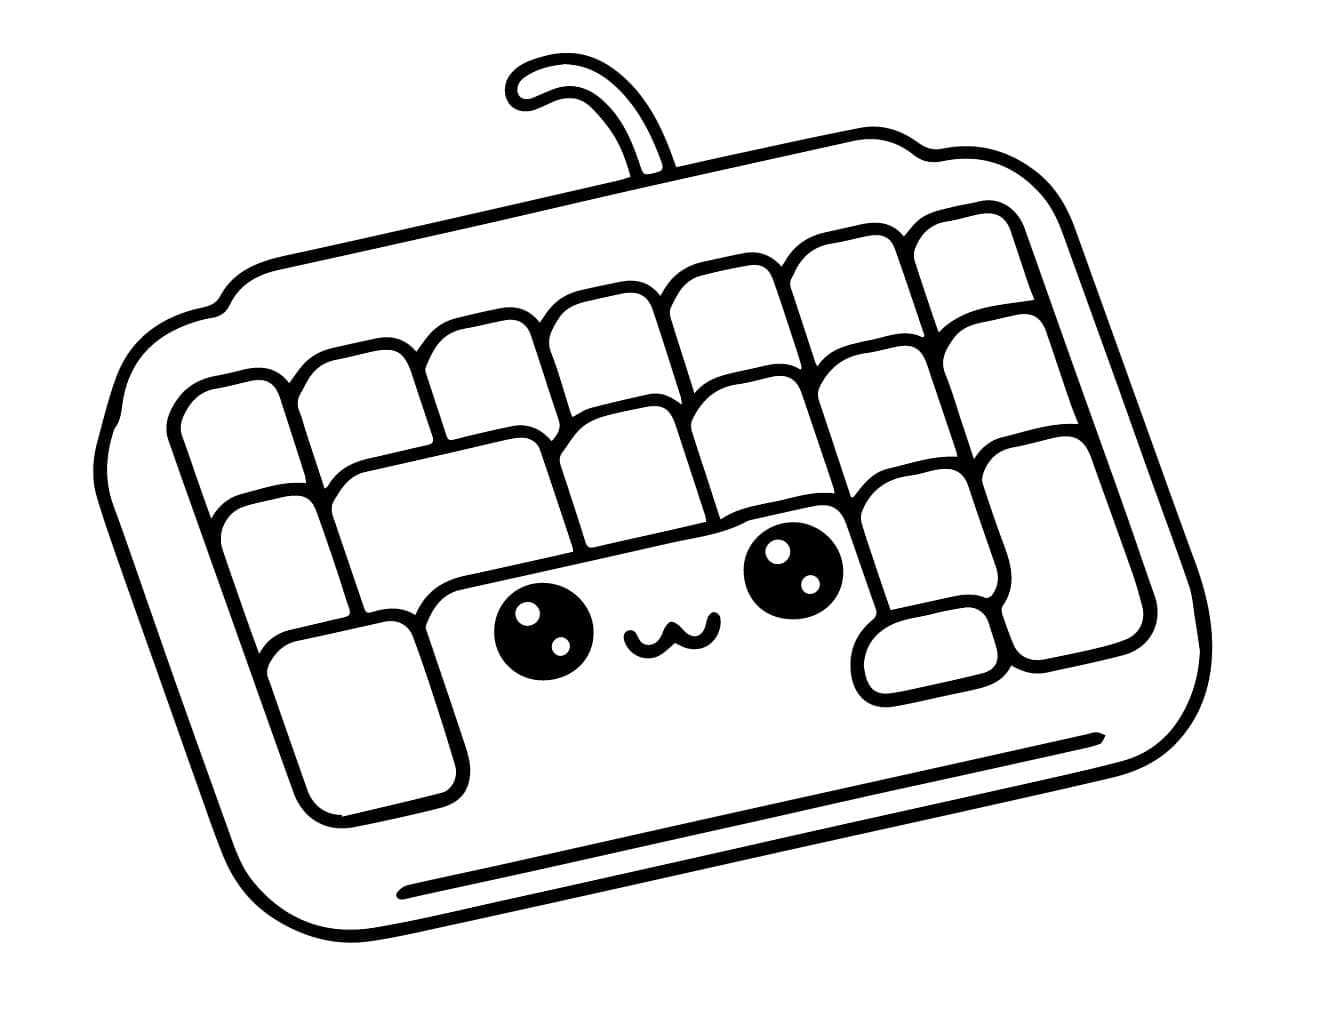 desenho de teclado fofo para colorir e pintar